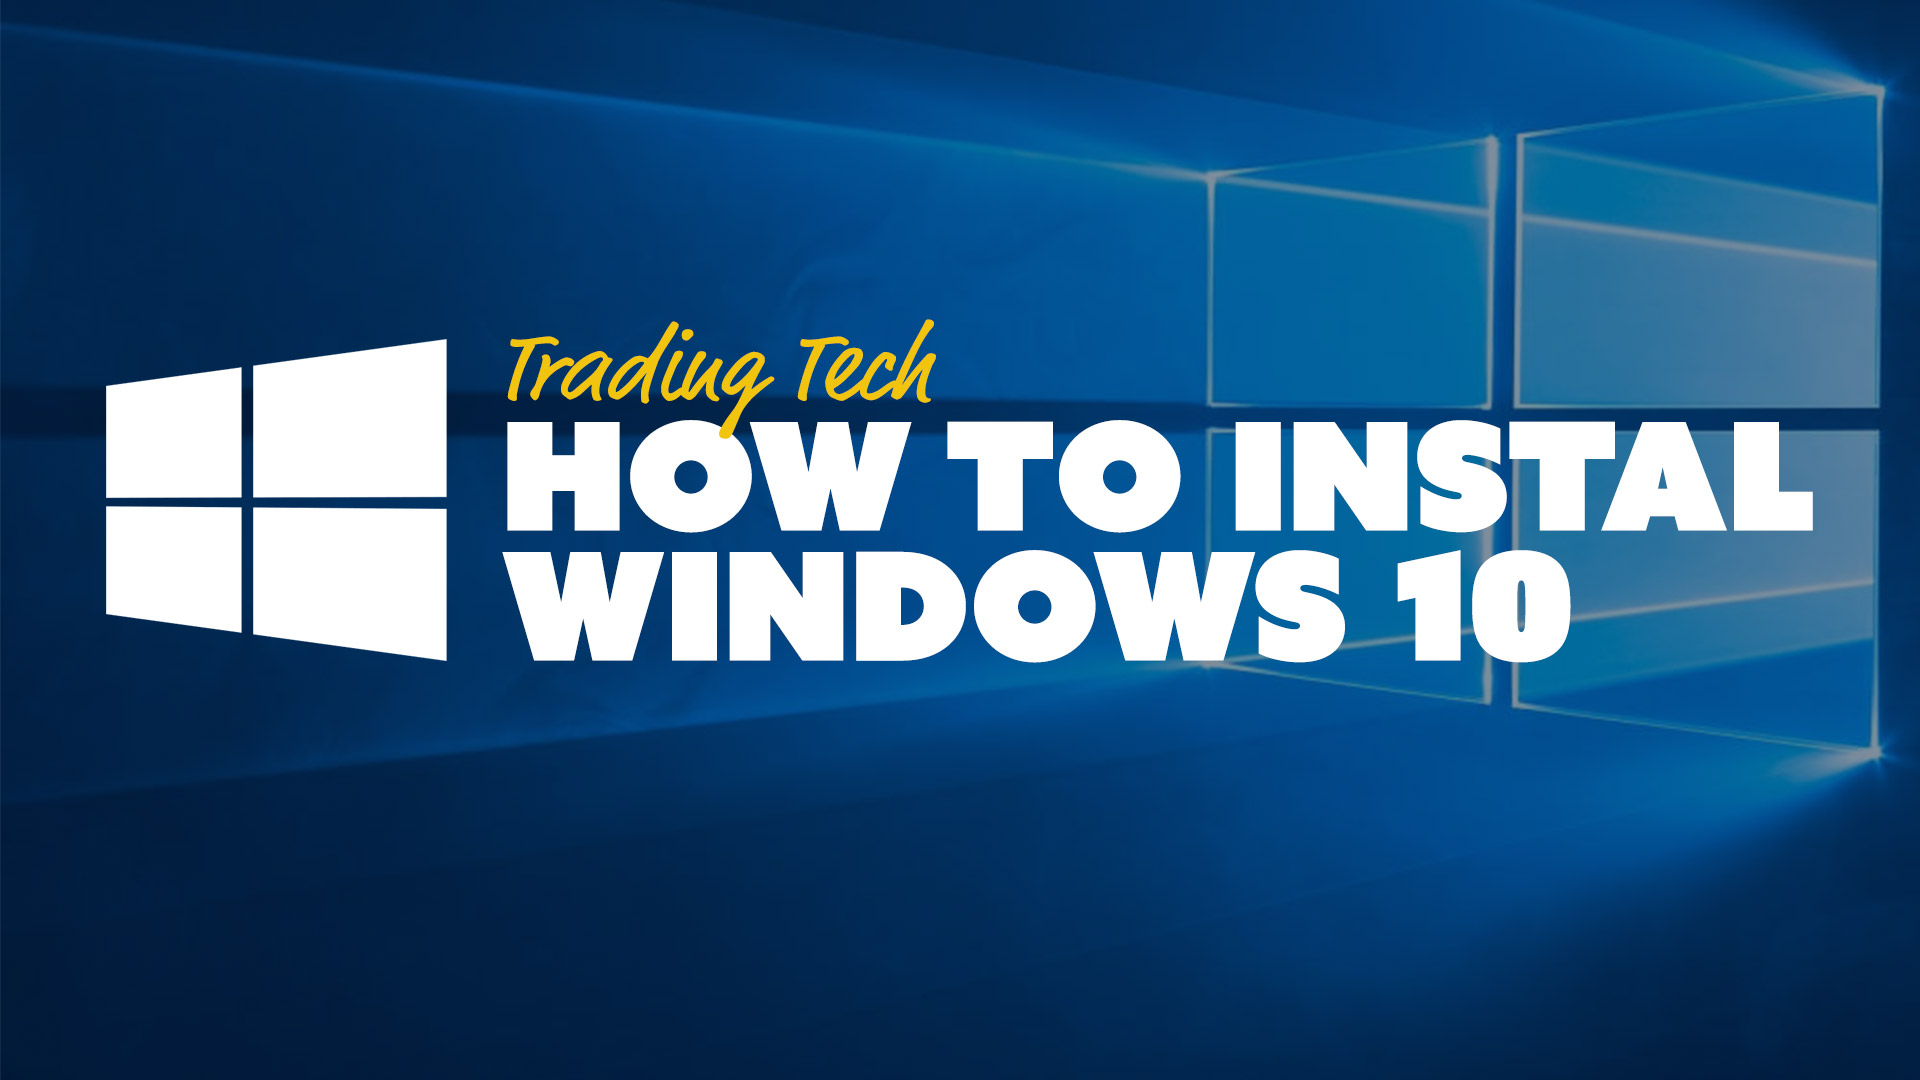 for windows instal Tipico